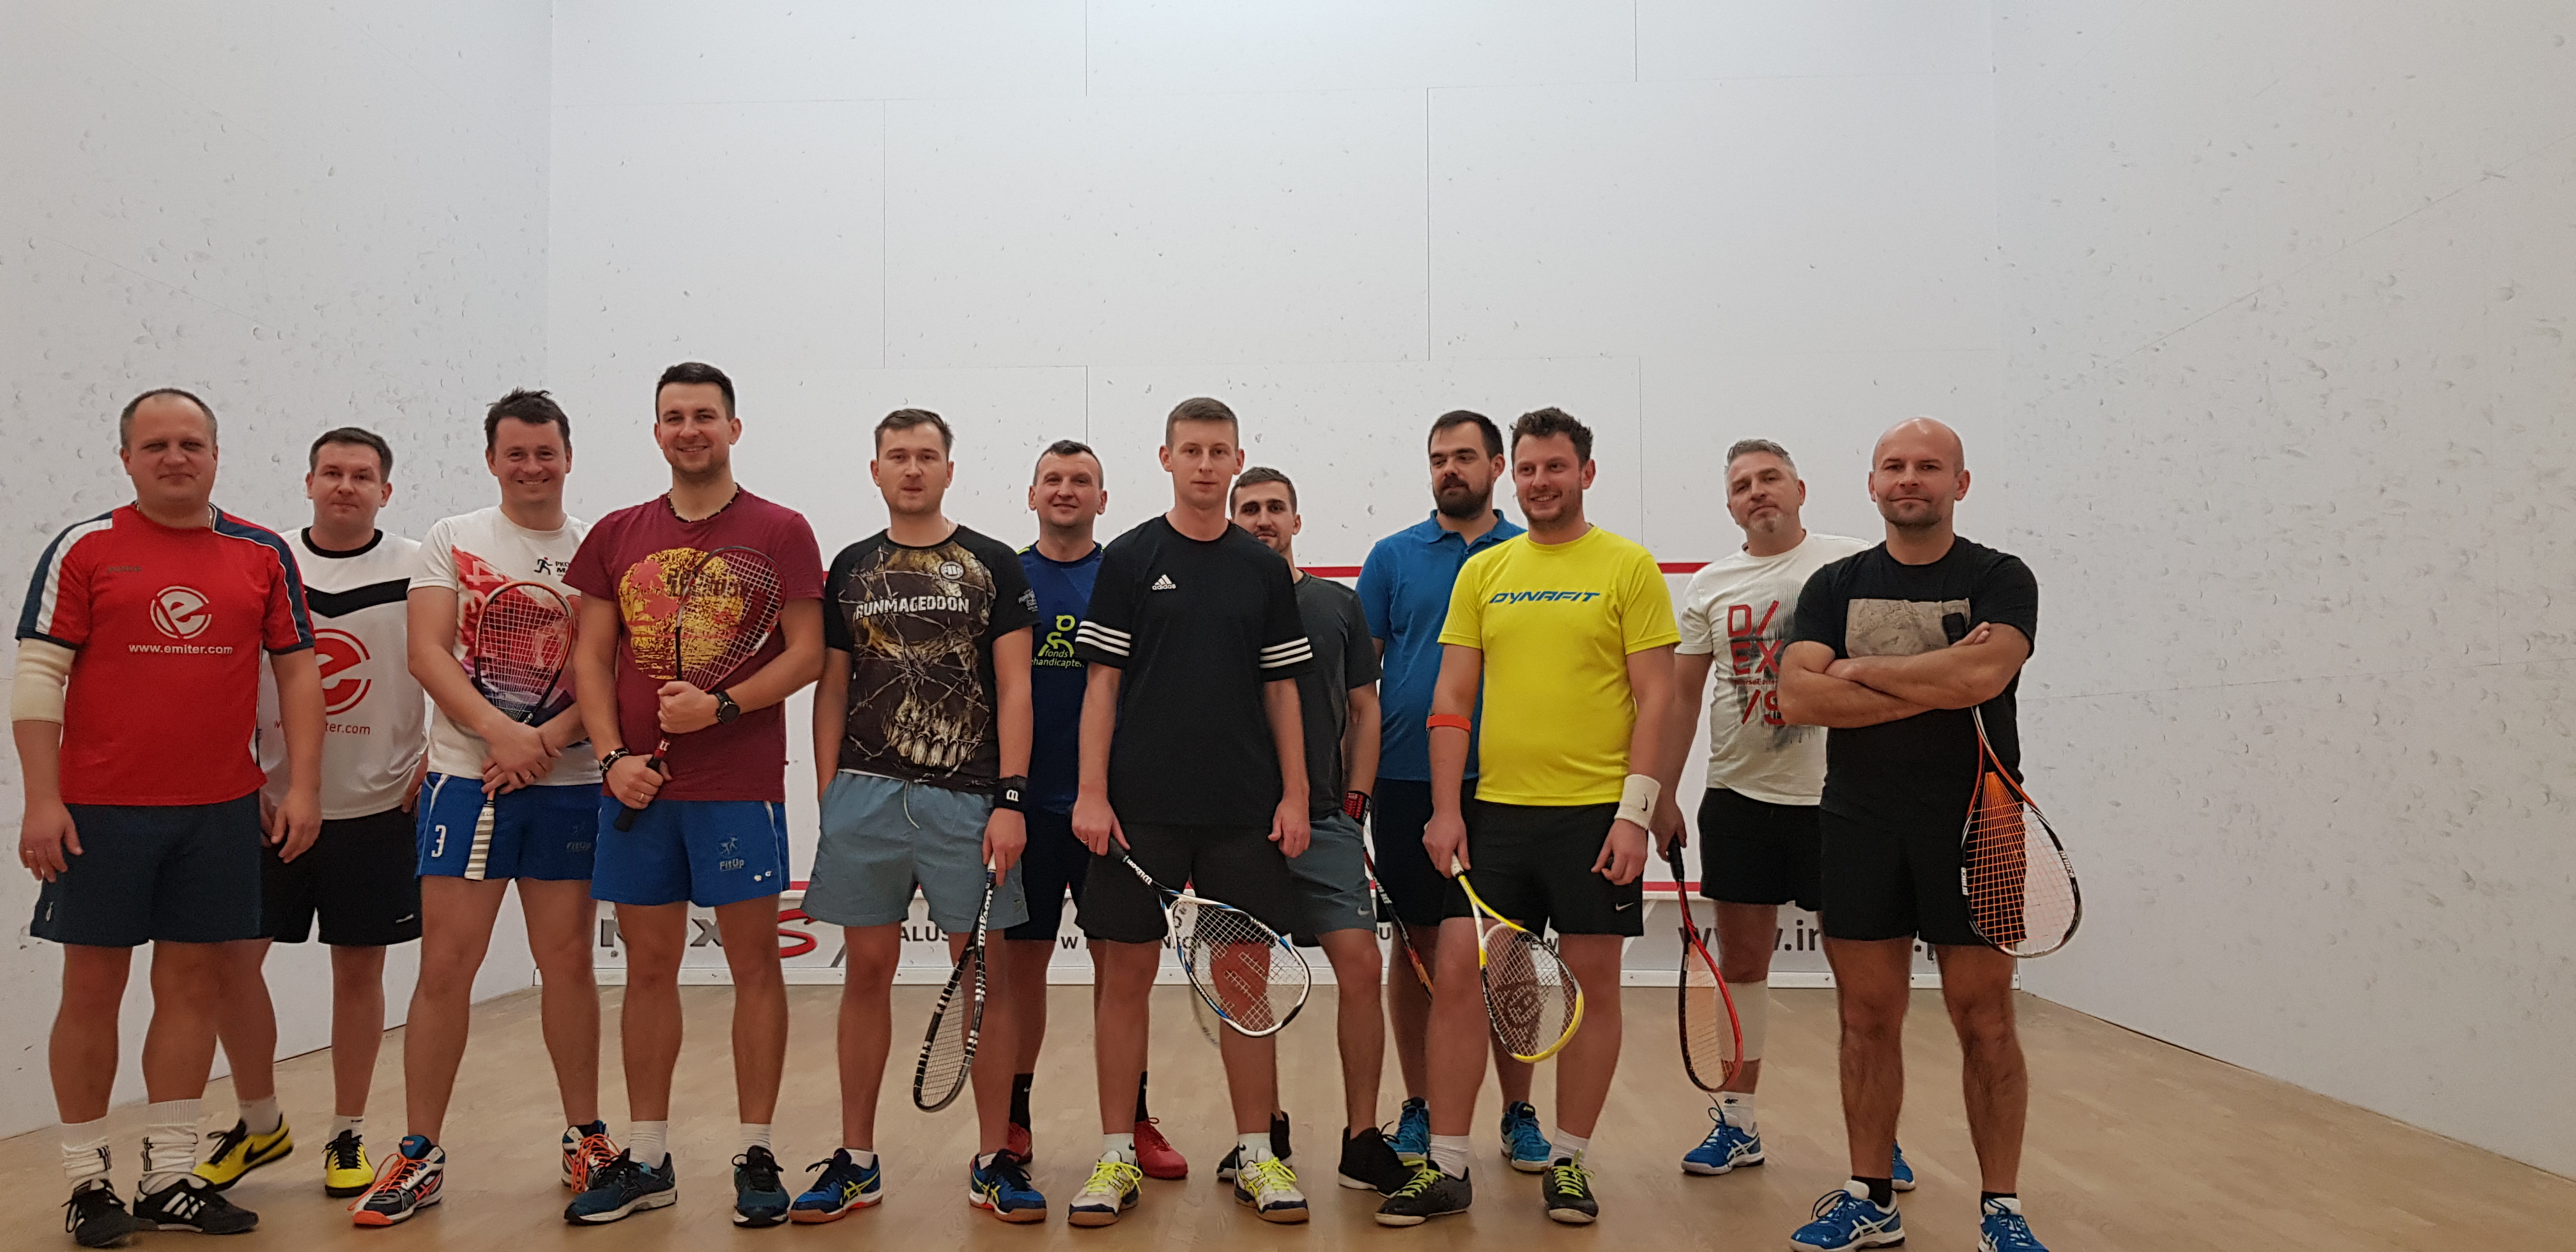 Turniej squasha Limanowa - grand prix 2019/2020 - zawodnicy na wspólnym zdjęciu